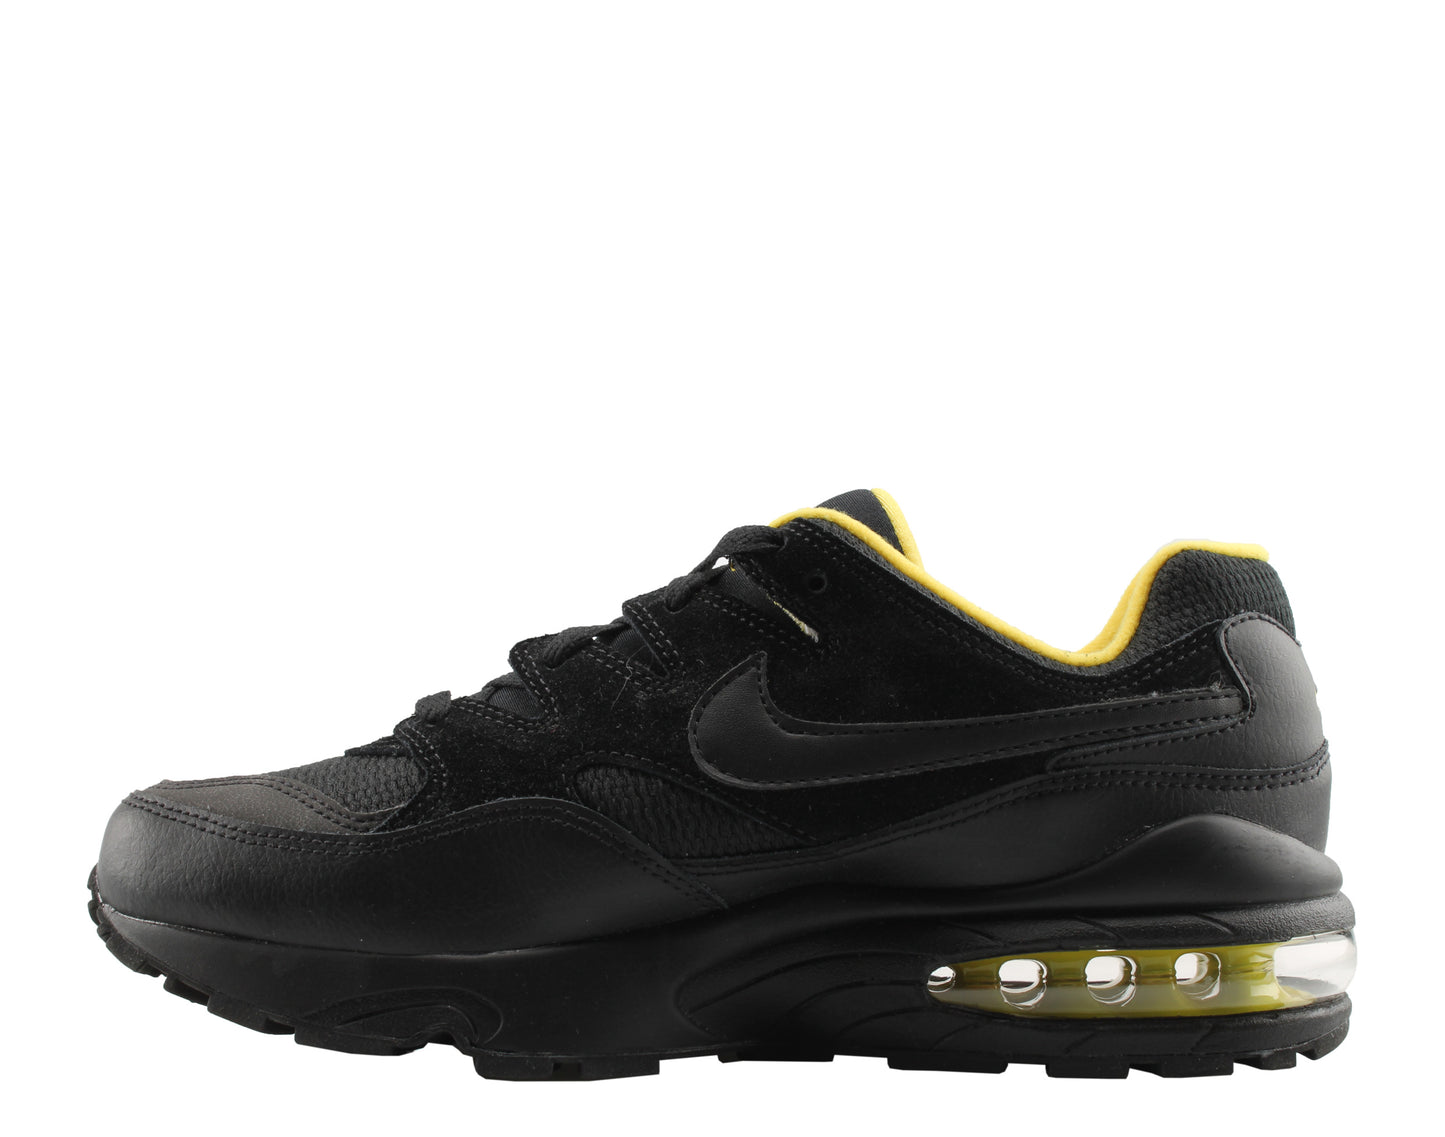 Nike Air Max 94 SE Black/Black-Tour Yellow Men's Running Shoes AV8197-002